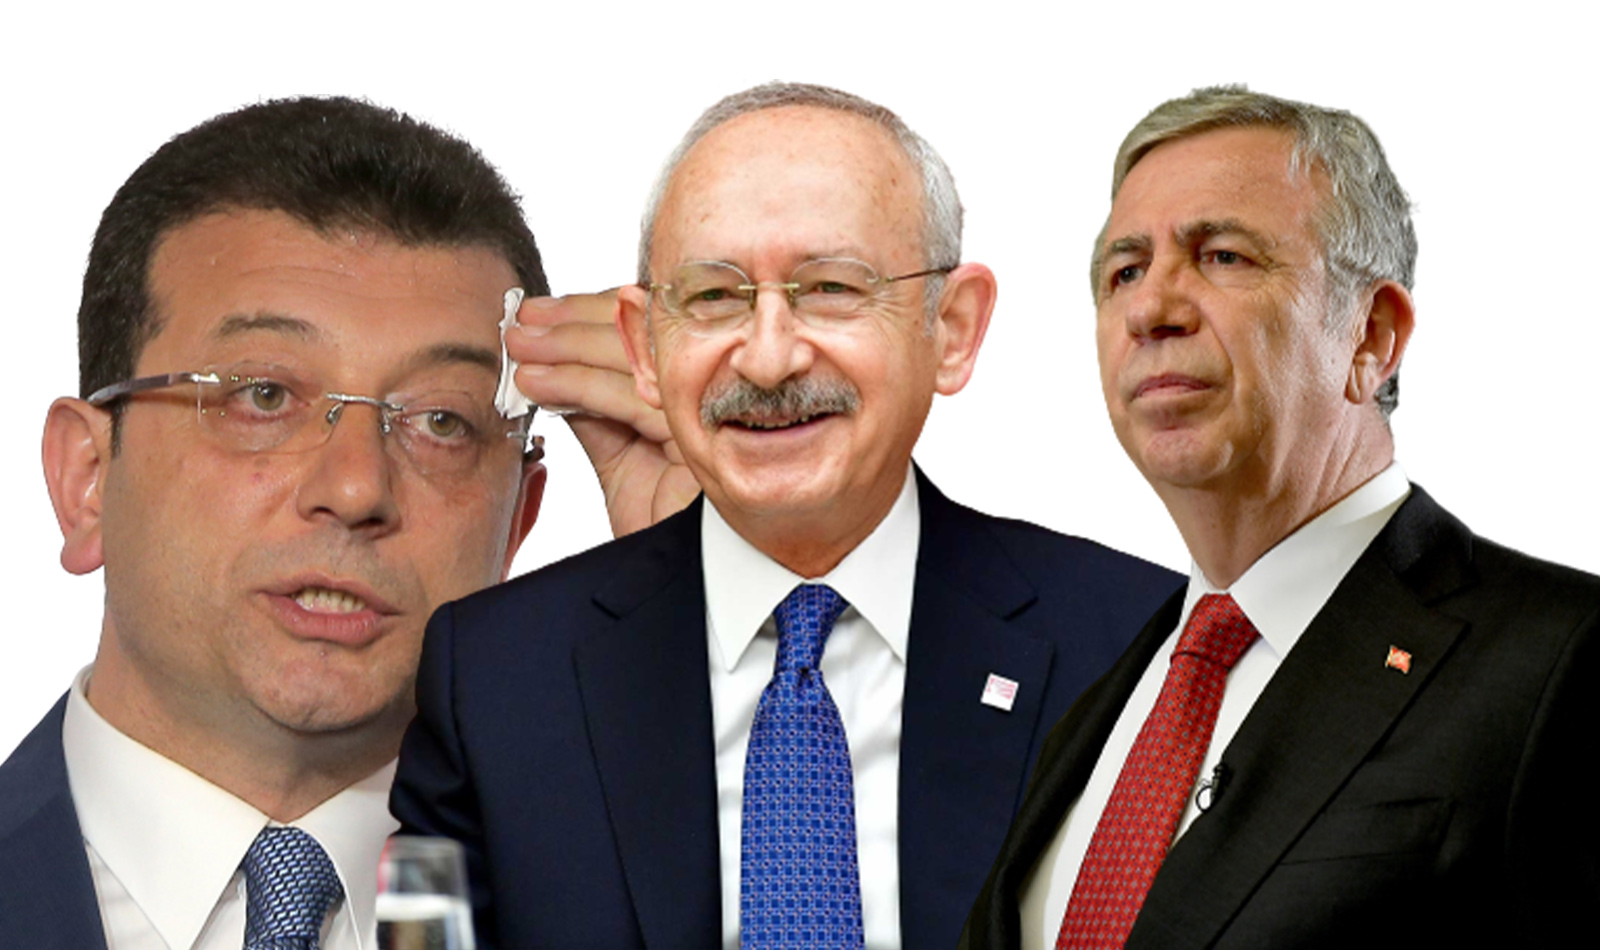 AK Partili Şamil Tayyar'dan çok konuşulacak iddia! Genel başkanlar aday olmayacak, Kılıçdaroğlu Mansur Yavaş ve Ekrem İmamoğlu'nun adaylığına karşı